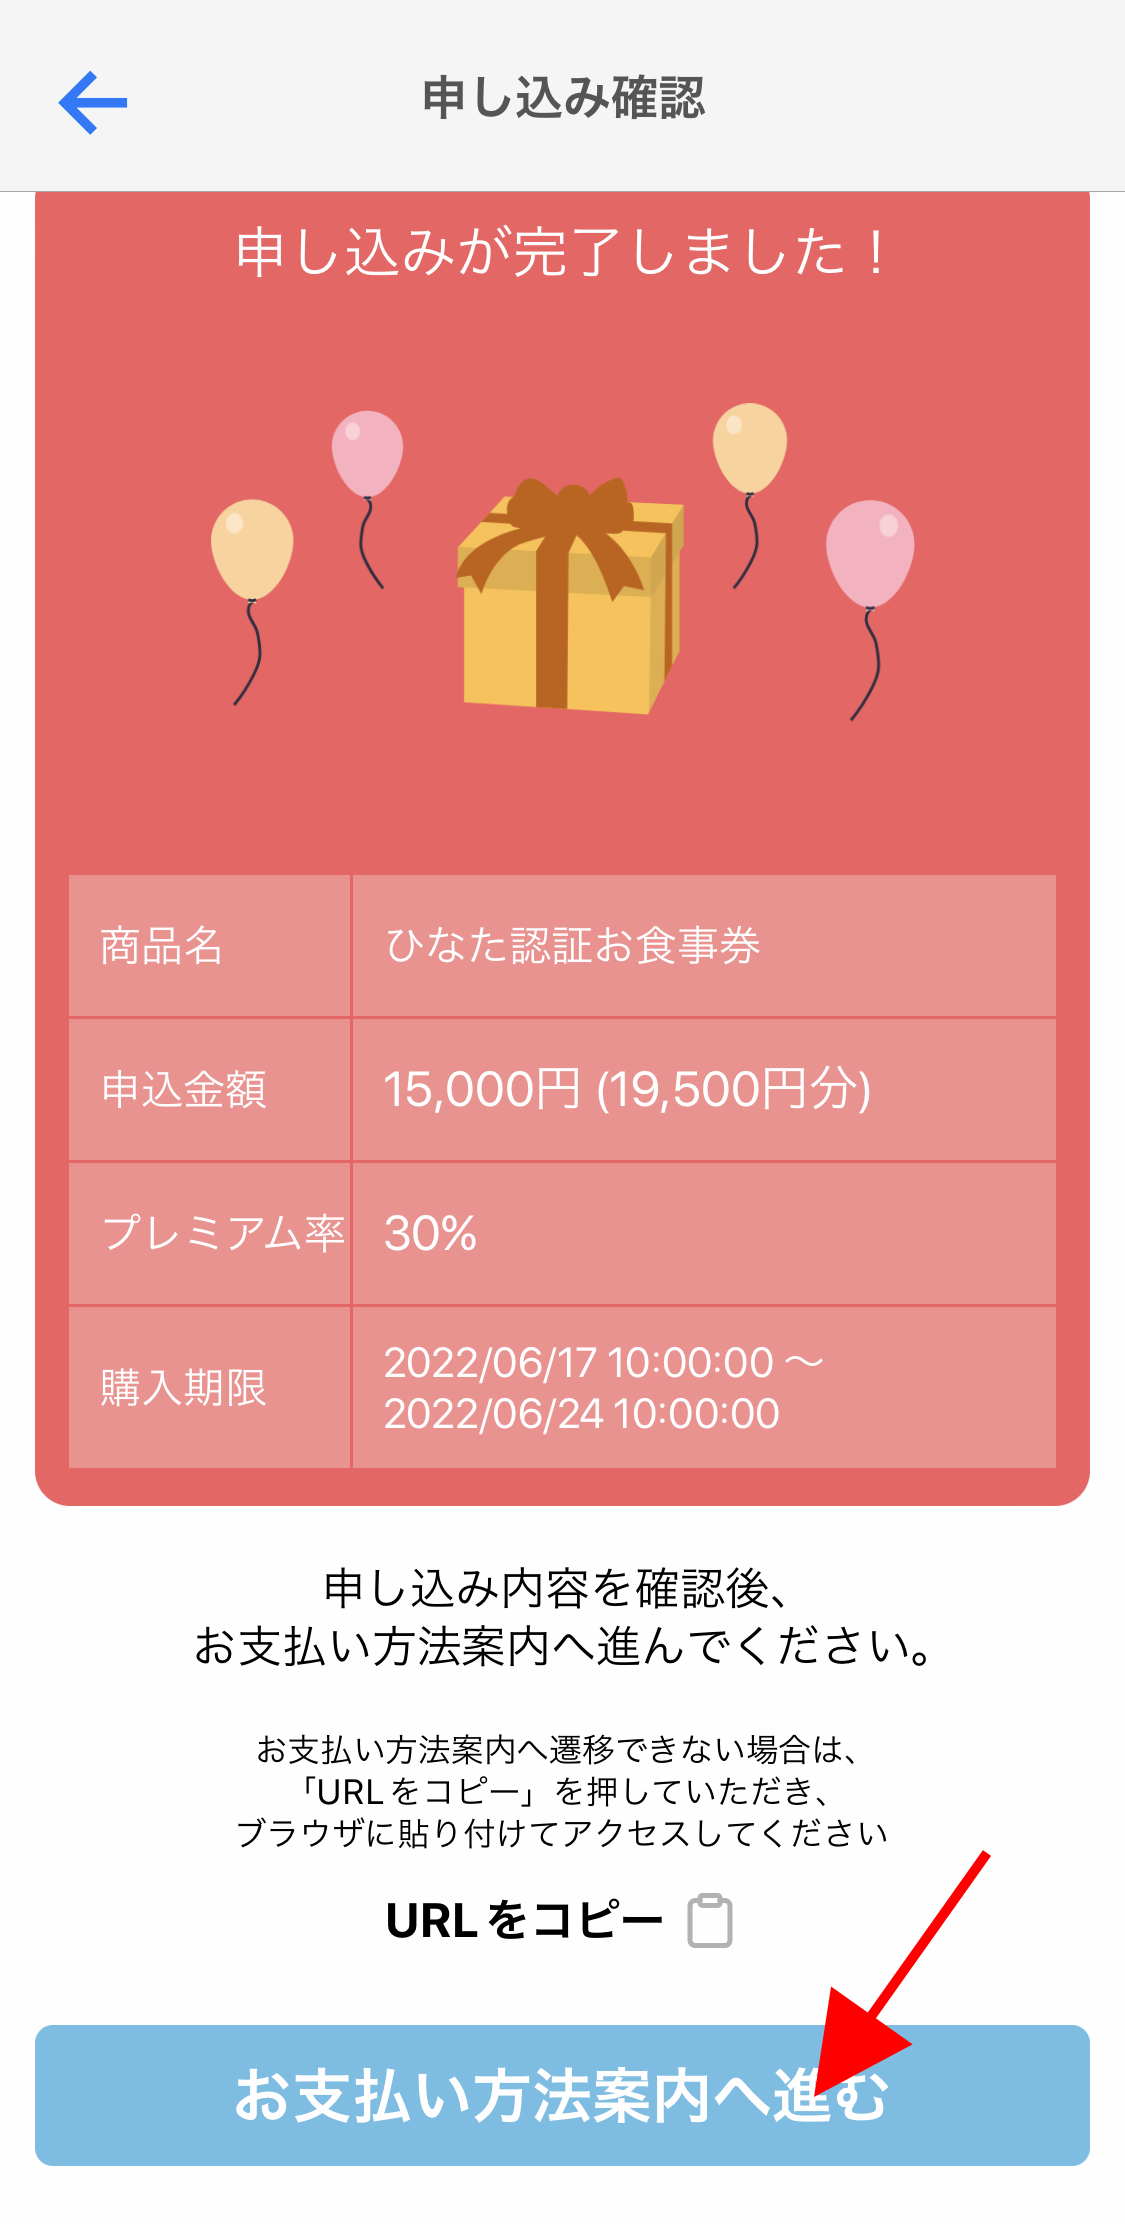 宮崎プレミアム付き電子食事券が利用開始【購入から利用までの流れまとめ】